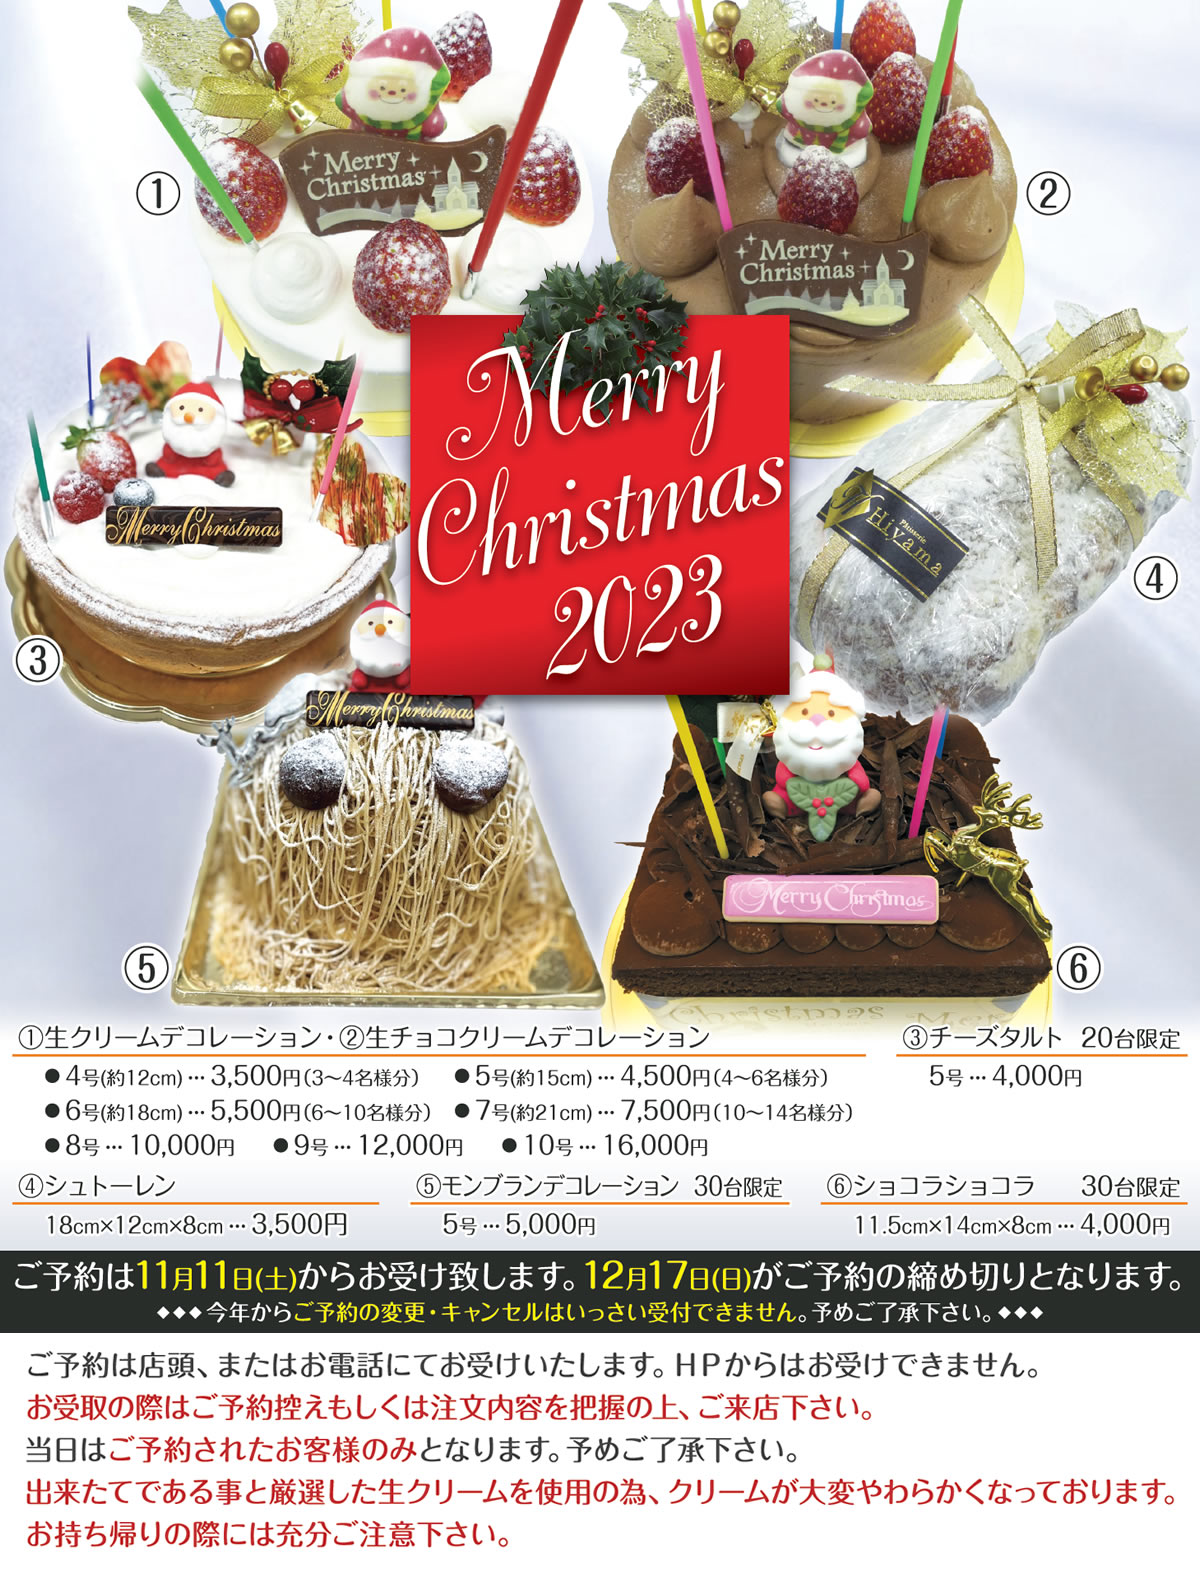 Patisserie Hiyama(パティスリー ヒヤマ) 2023年 X'mas クリスマスケーキ